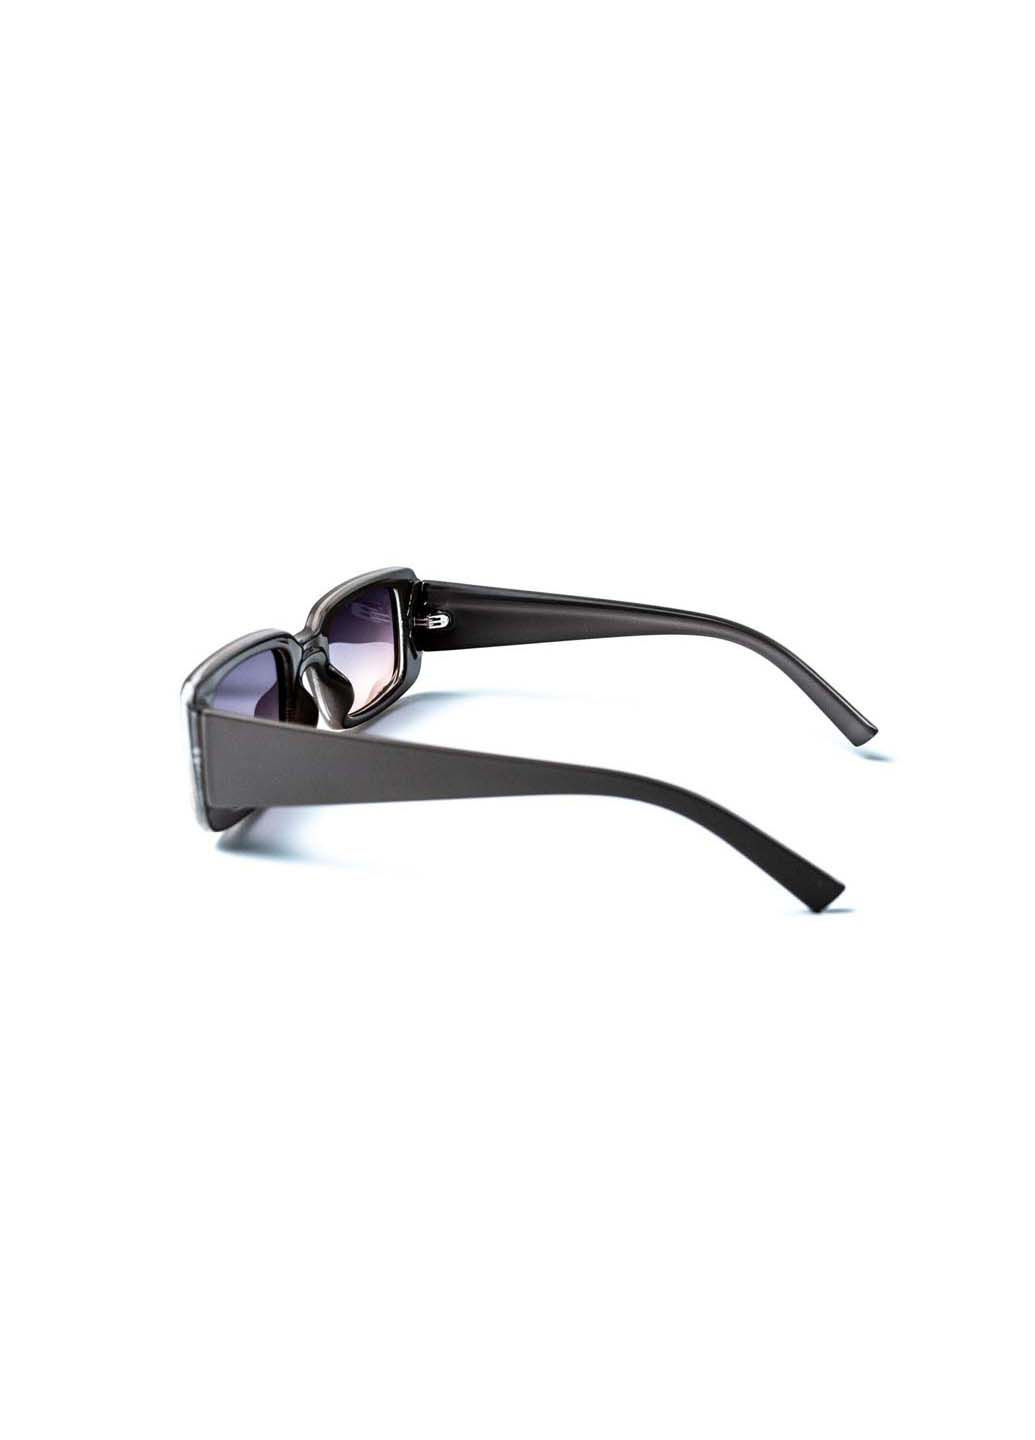 Солнцезащитные очки с поляризацией. Классика женские 434-561. LuckyLOOK (291885858)